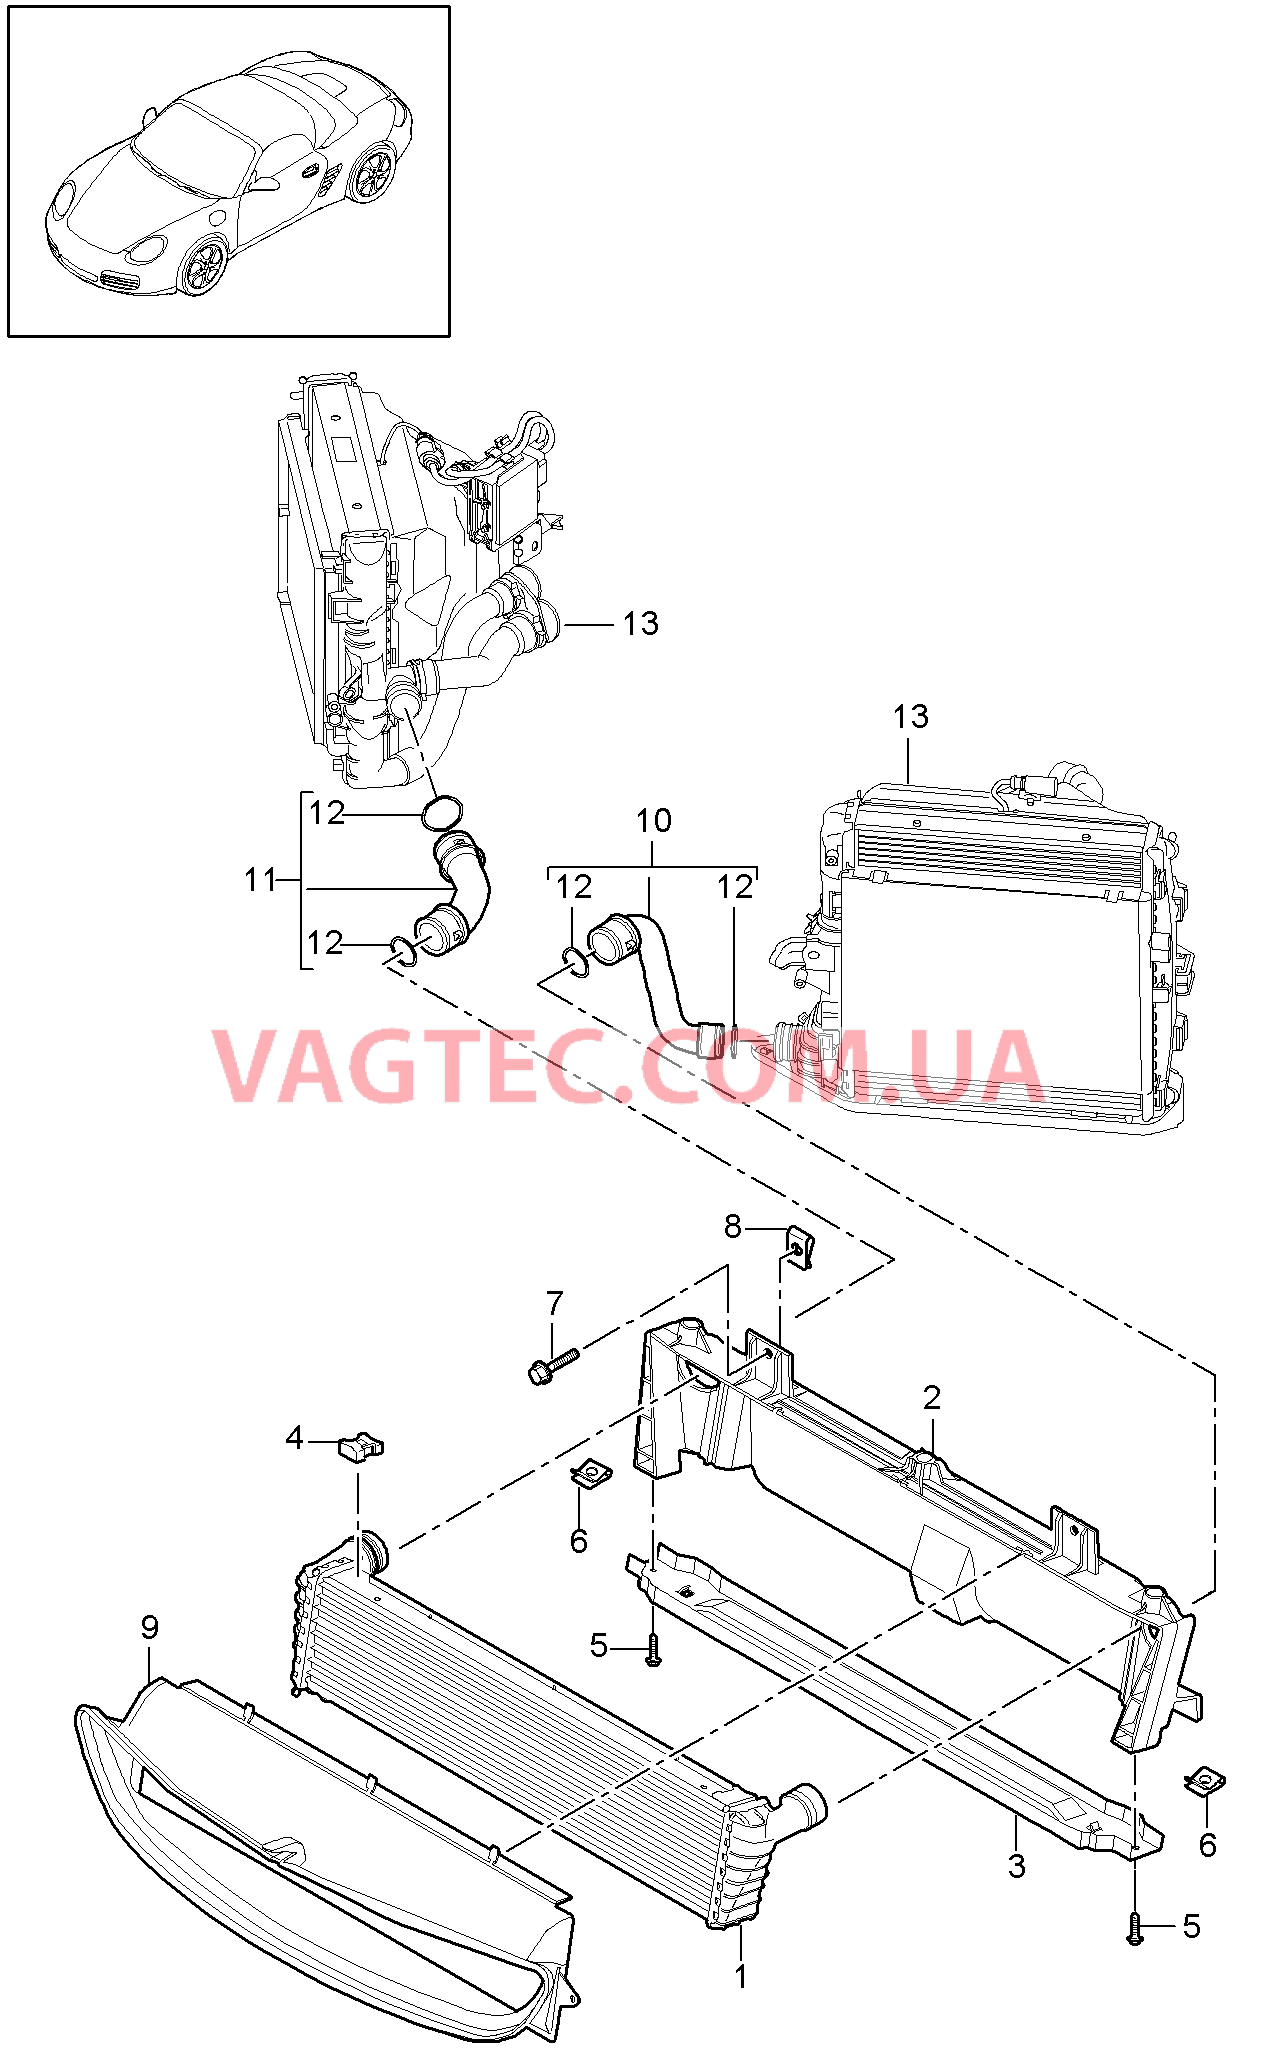 105-017 Жидкостный радиатор, средний
						
						MA1.21, I250, MA1.20, I183, MA1.21, I183/480 для PORSCHE Boxster 2009-2012